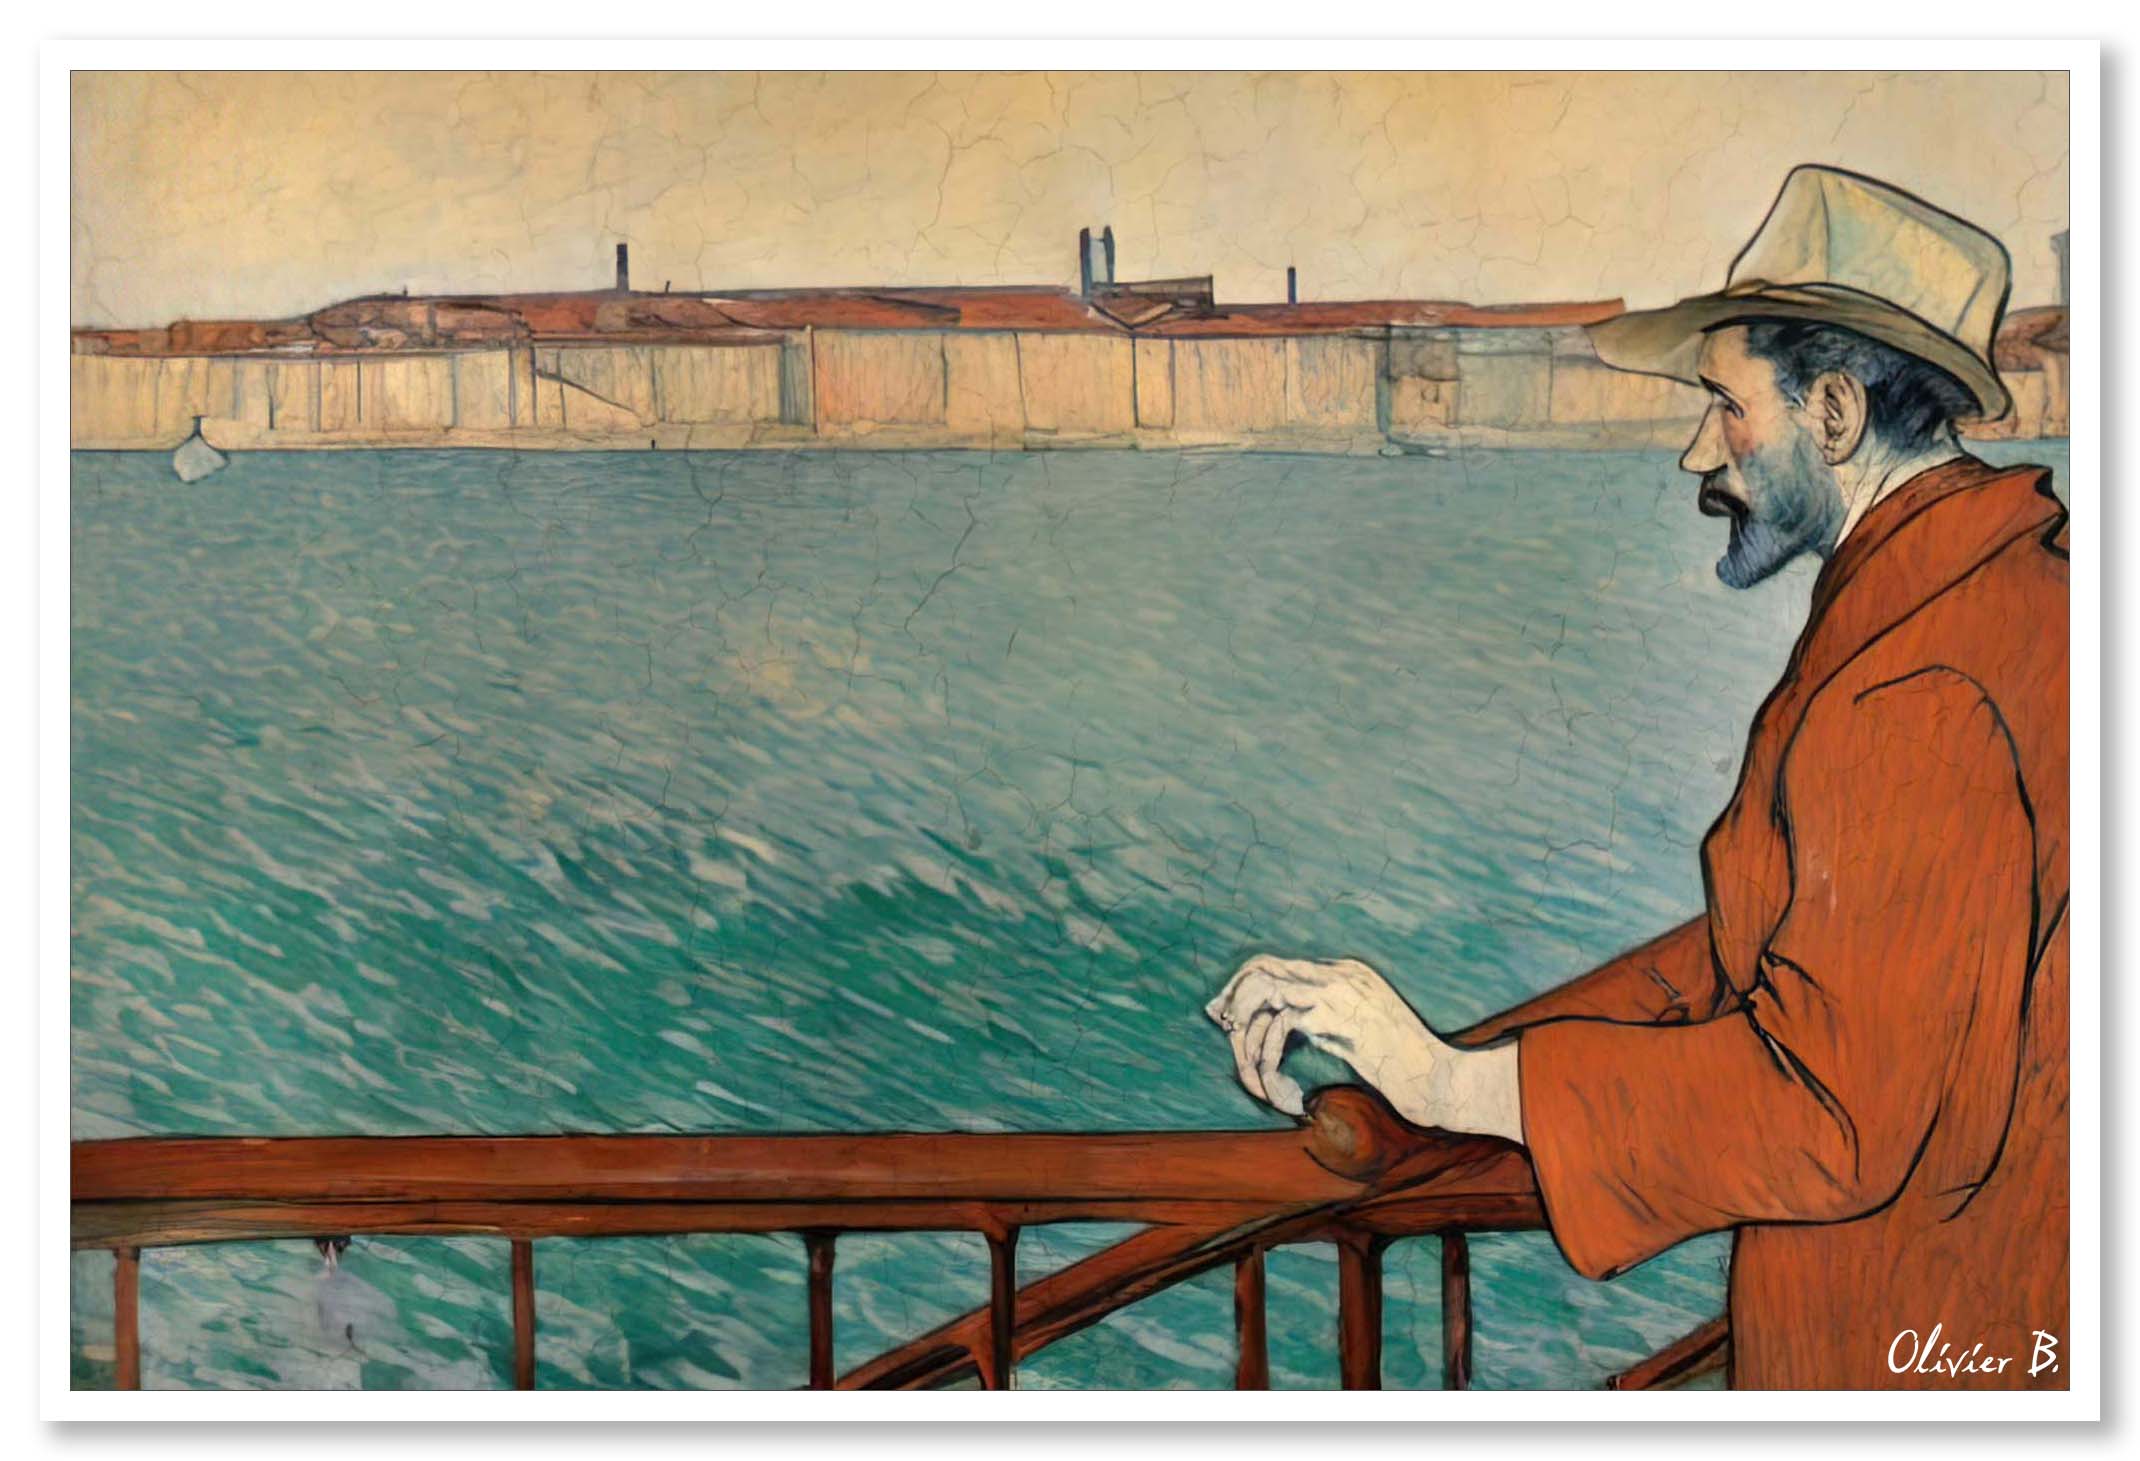 Œuvre 'Le Contemplatif' selon Toulouse-Lautrec : un homme contemplant la mer, une vision inspirée par l'intelligence artificielle